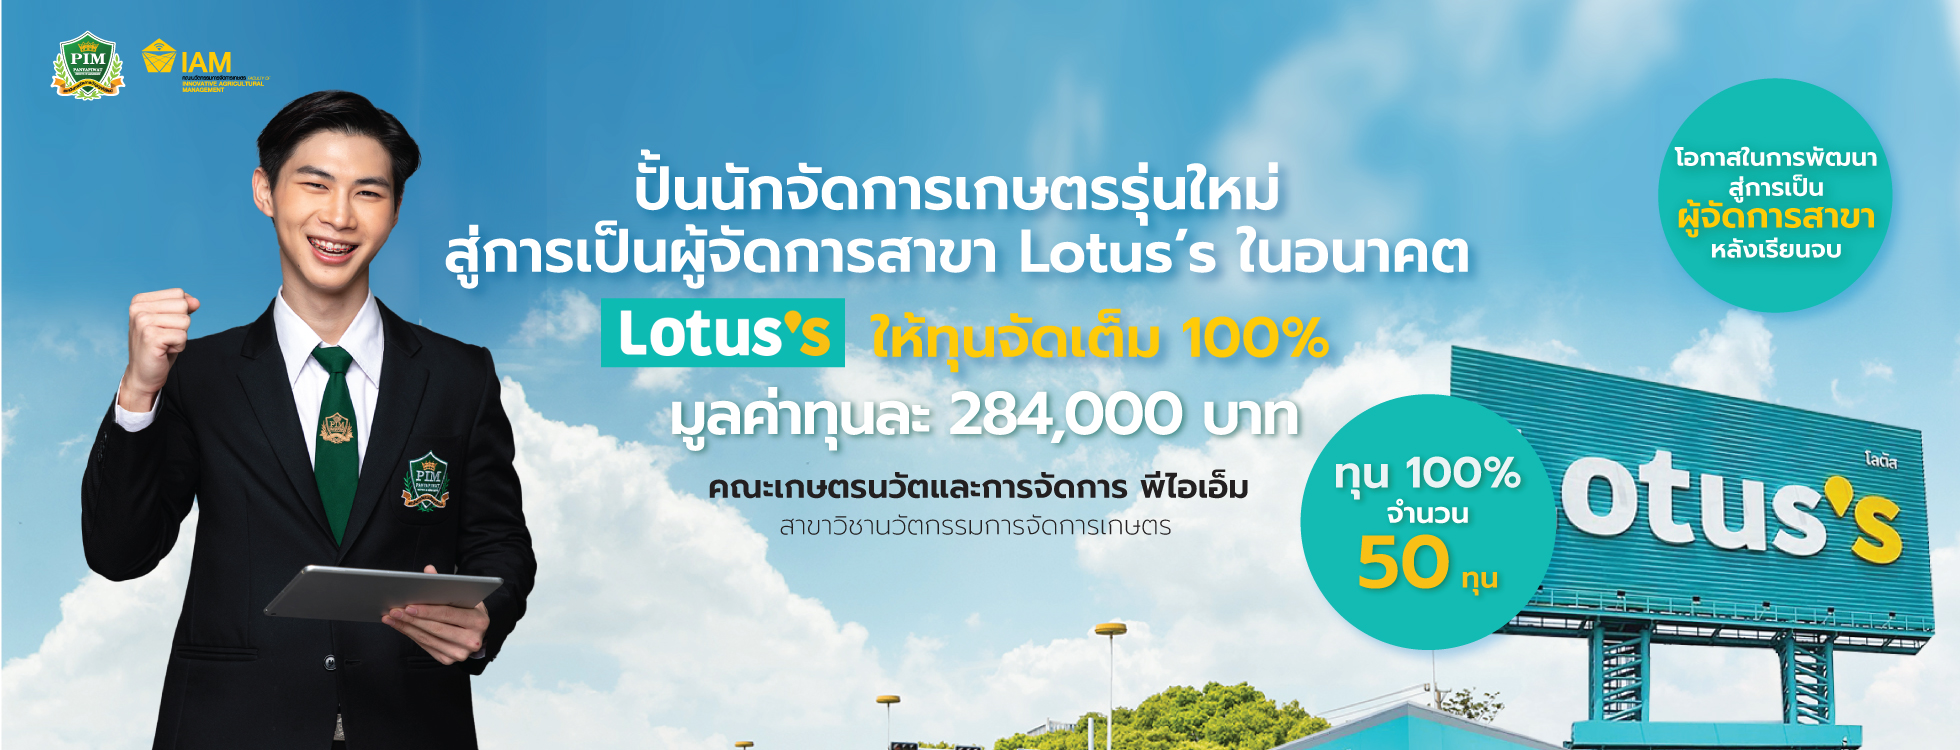 Lotus’s ในอนาคต Lotus’s ให้ทุนจัดเต็ม 100% จำนวน 50 ทุน มูลค่าทุนละ 284,000 บาท คณะเกษตรนวัตและการจัดการ สาขาวิชานวัตกรรมการจัดการเกษตร